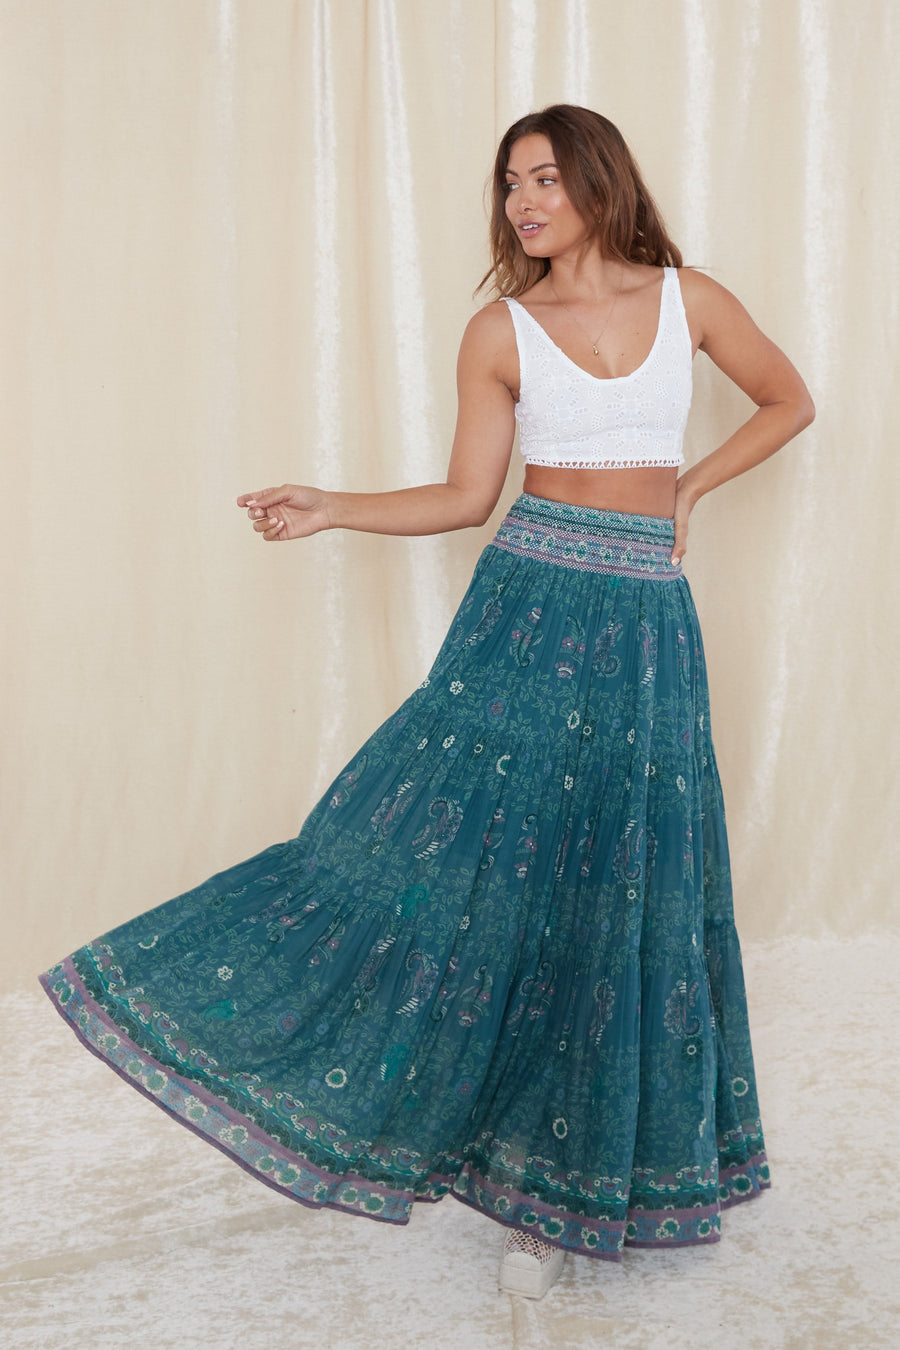 Manisha Maxi Skirt - Capri Blue